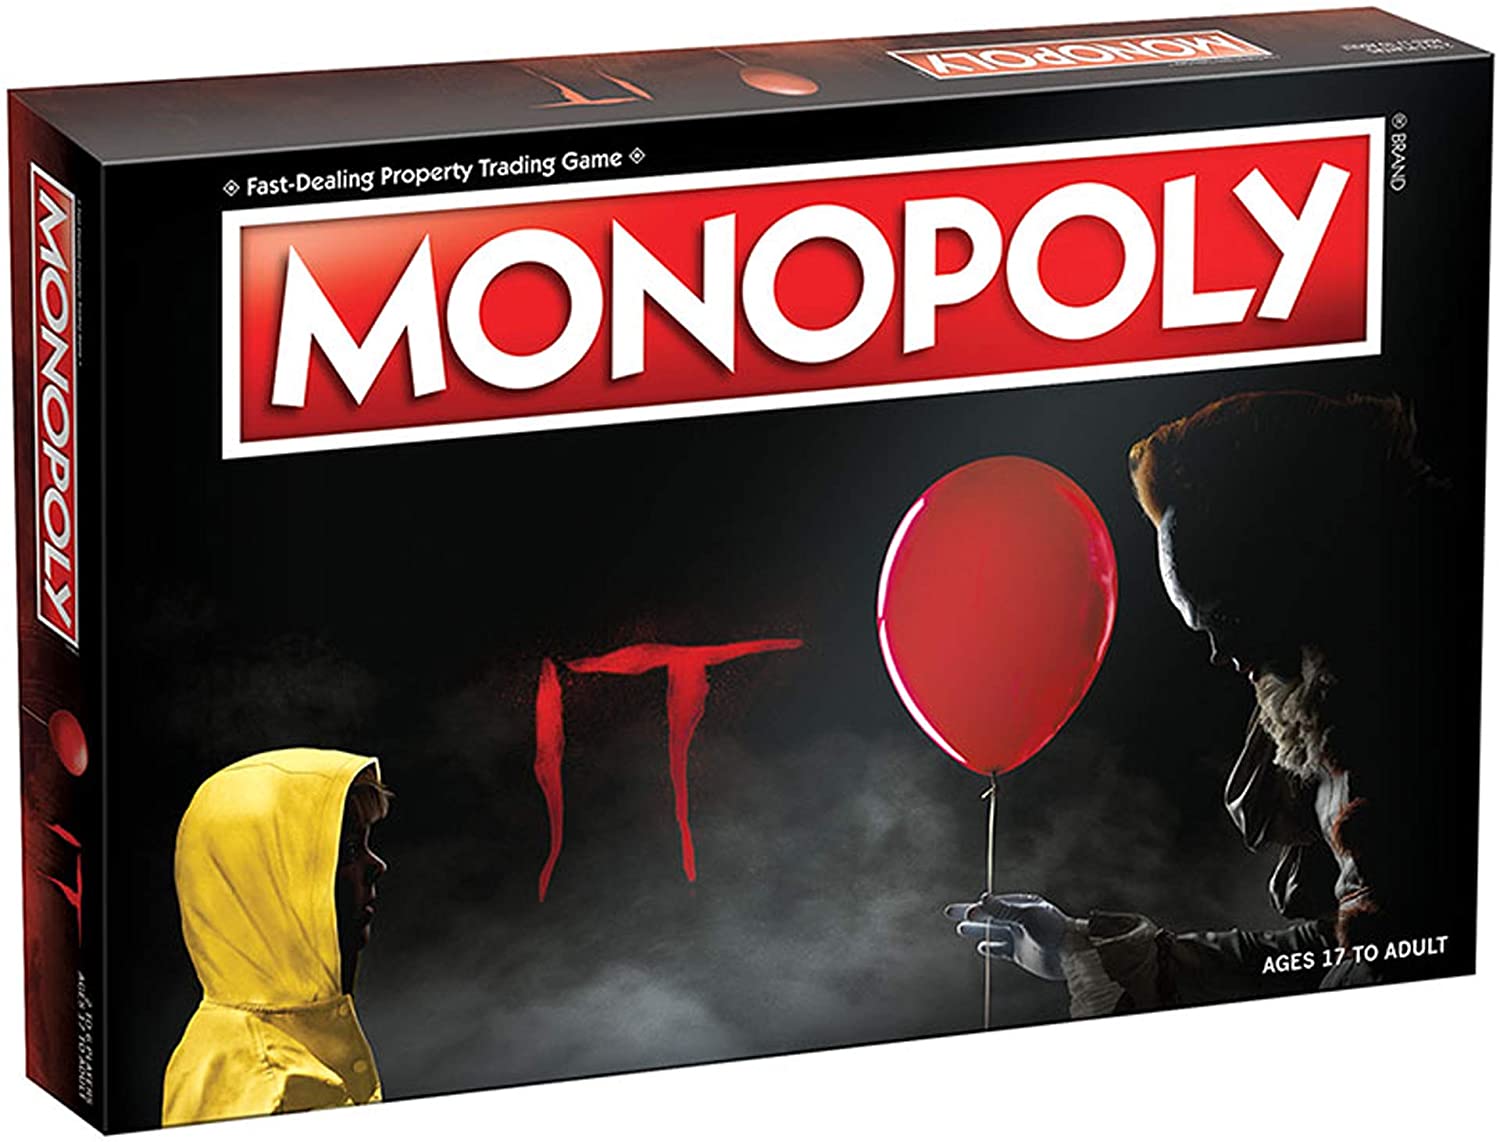 Monopoly: IT